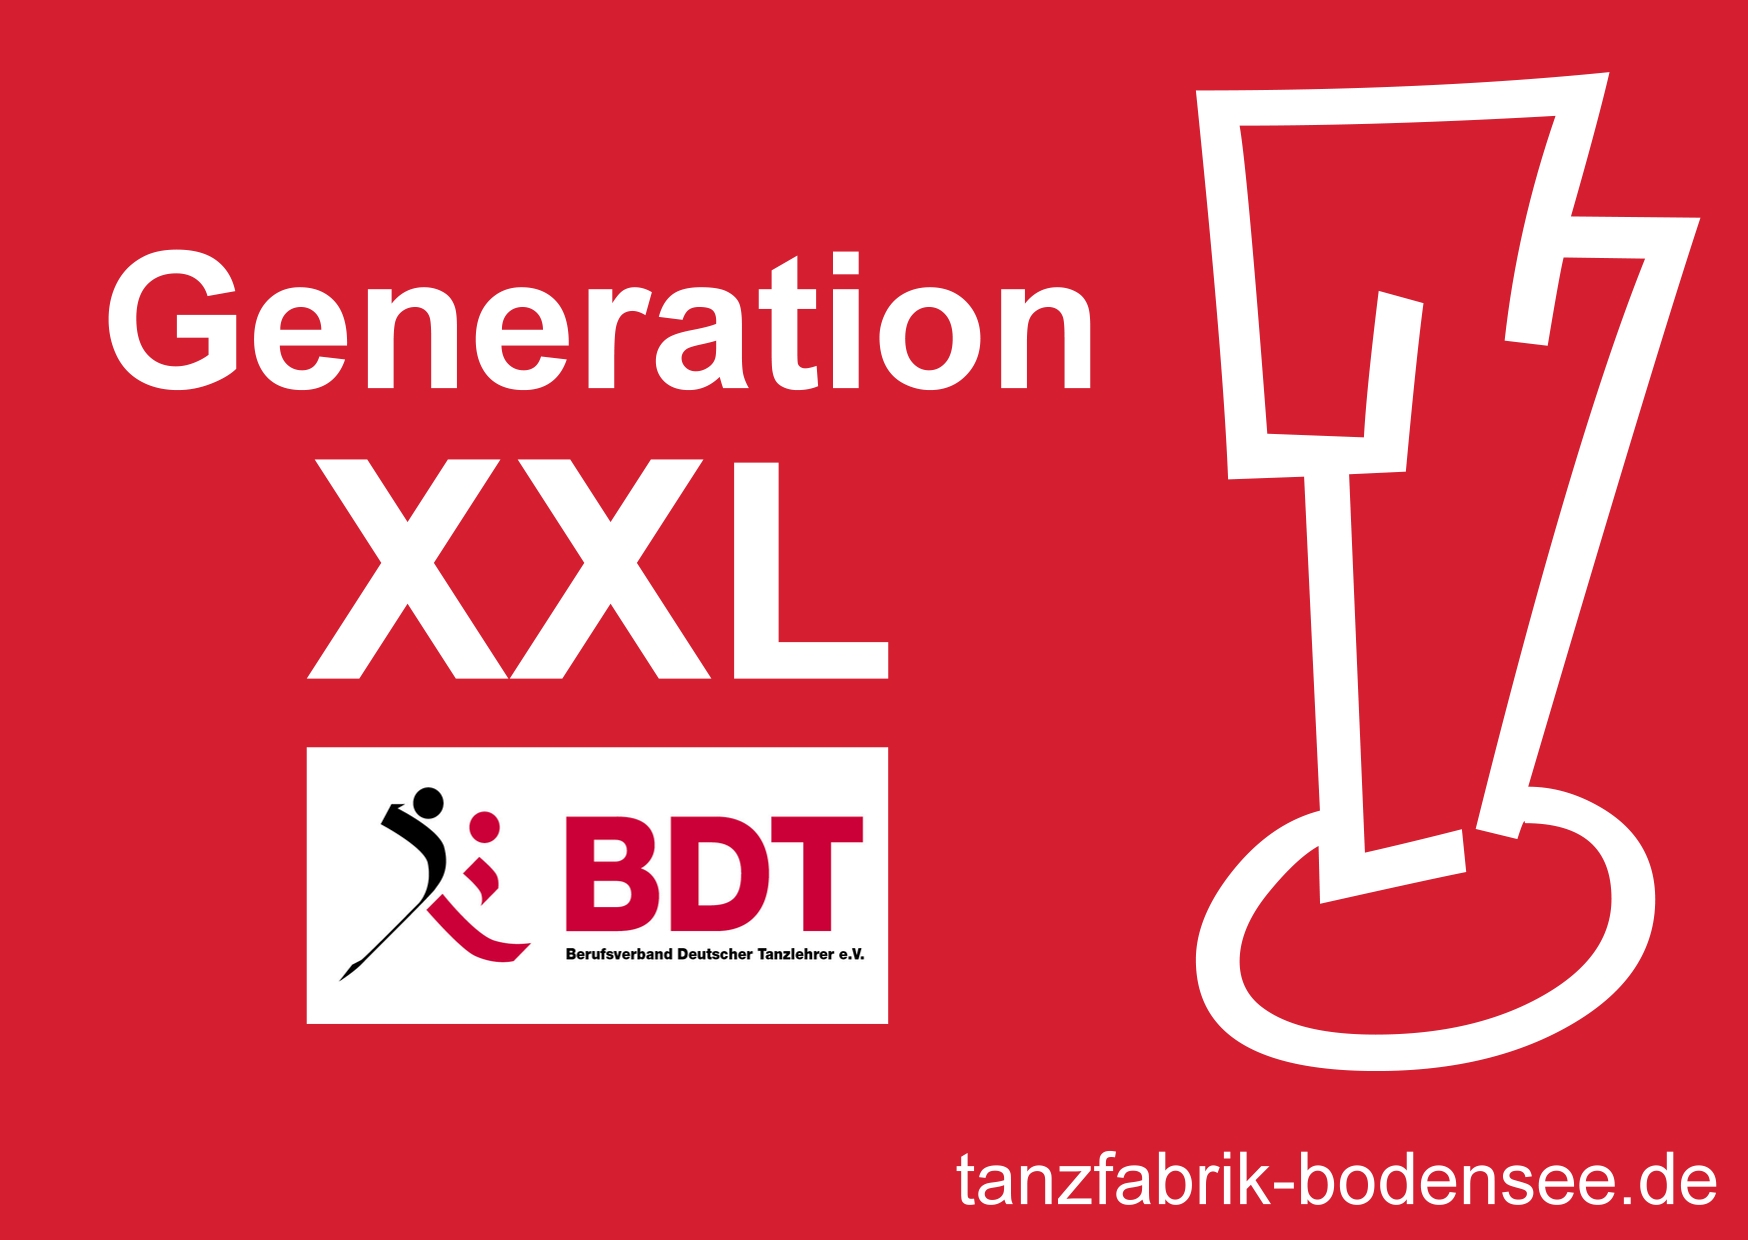 Generation XXL Kinder brauchen Bewegung